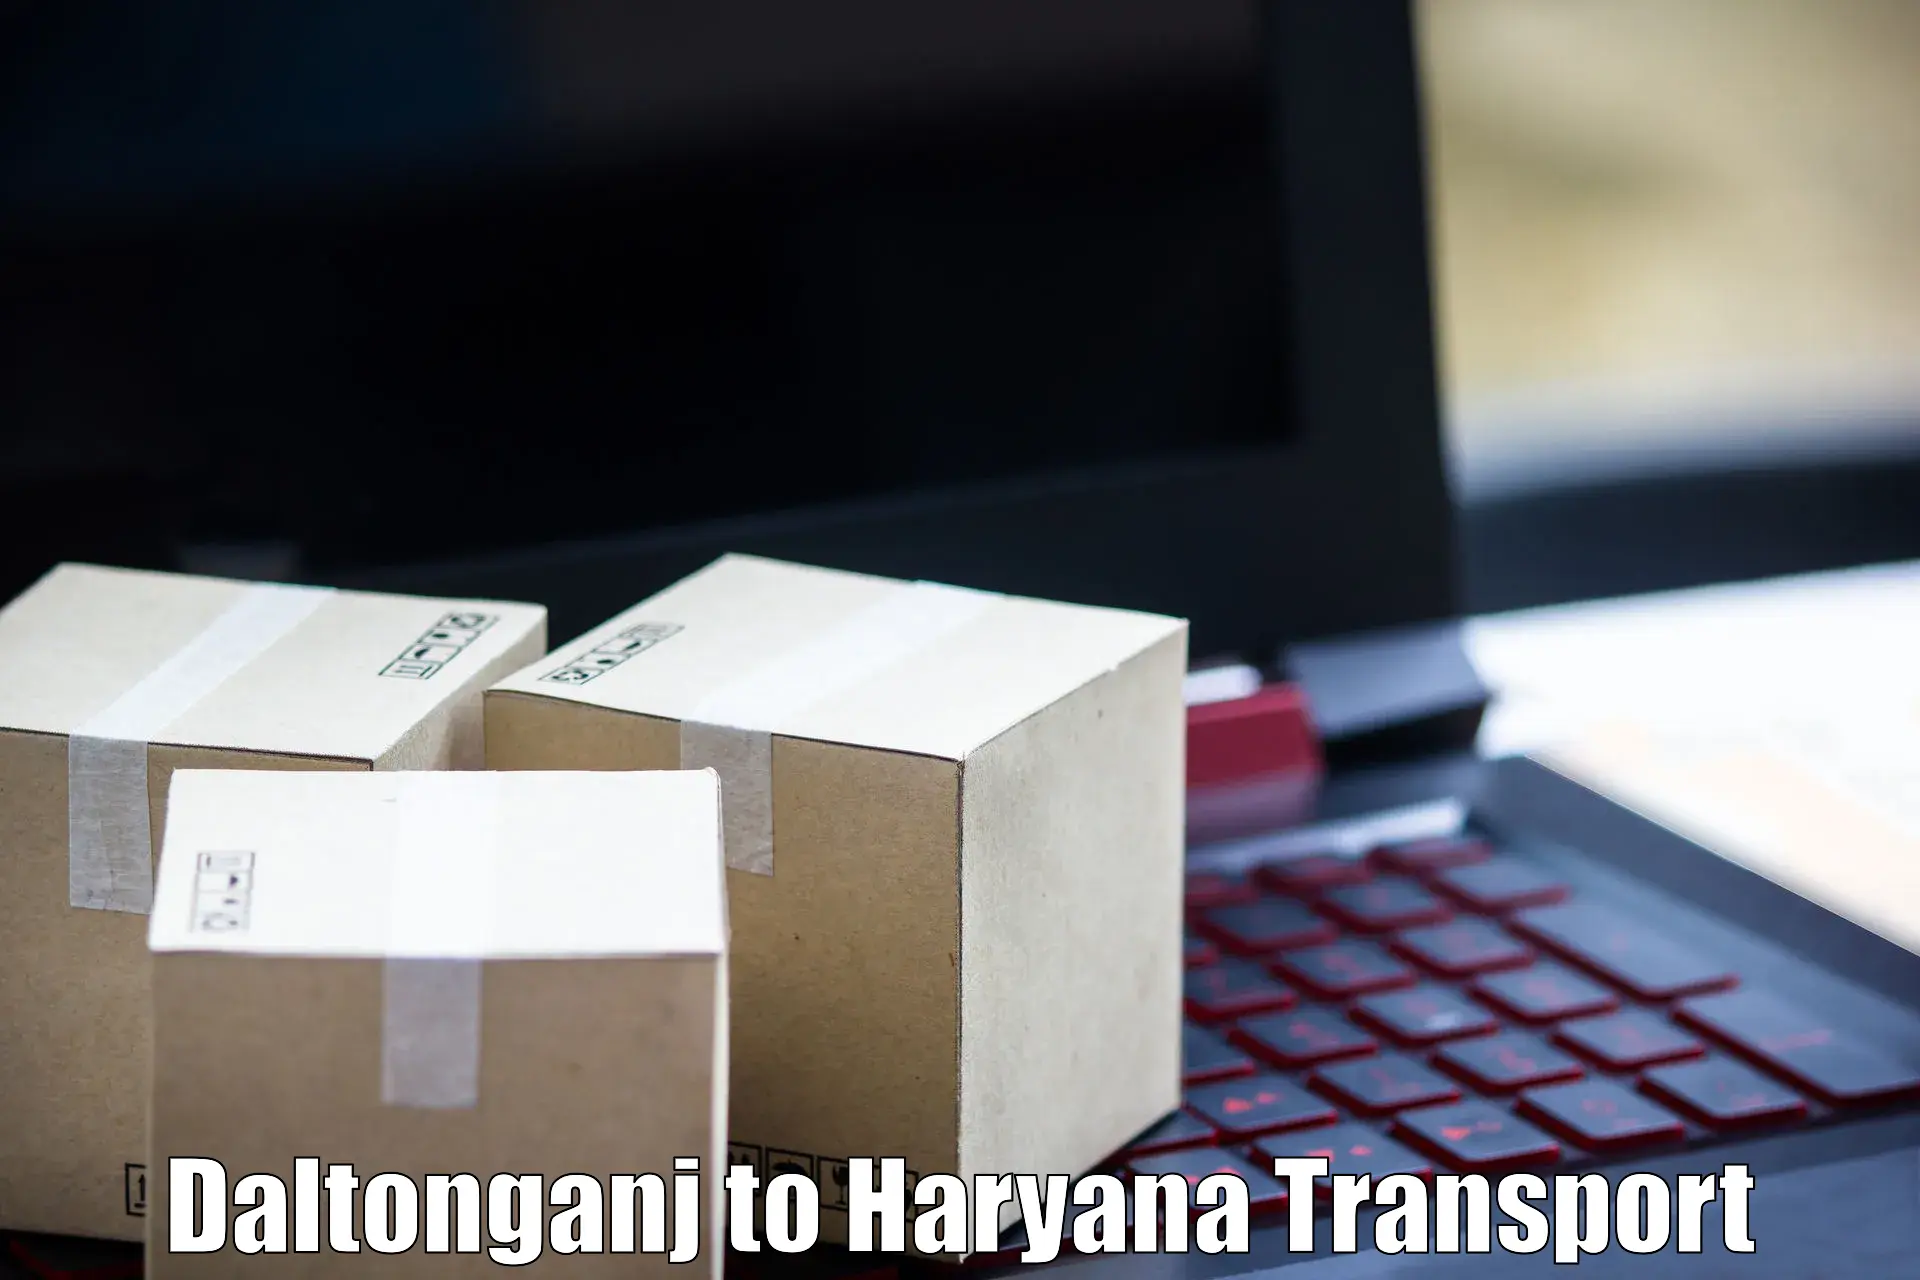 Transport in sharing Daltonganj to Chaudhary Charan Singh Haryana Agricultural University Hisar